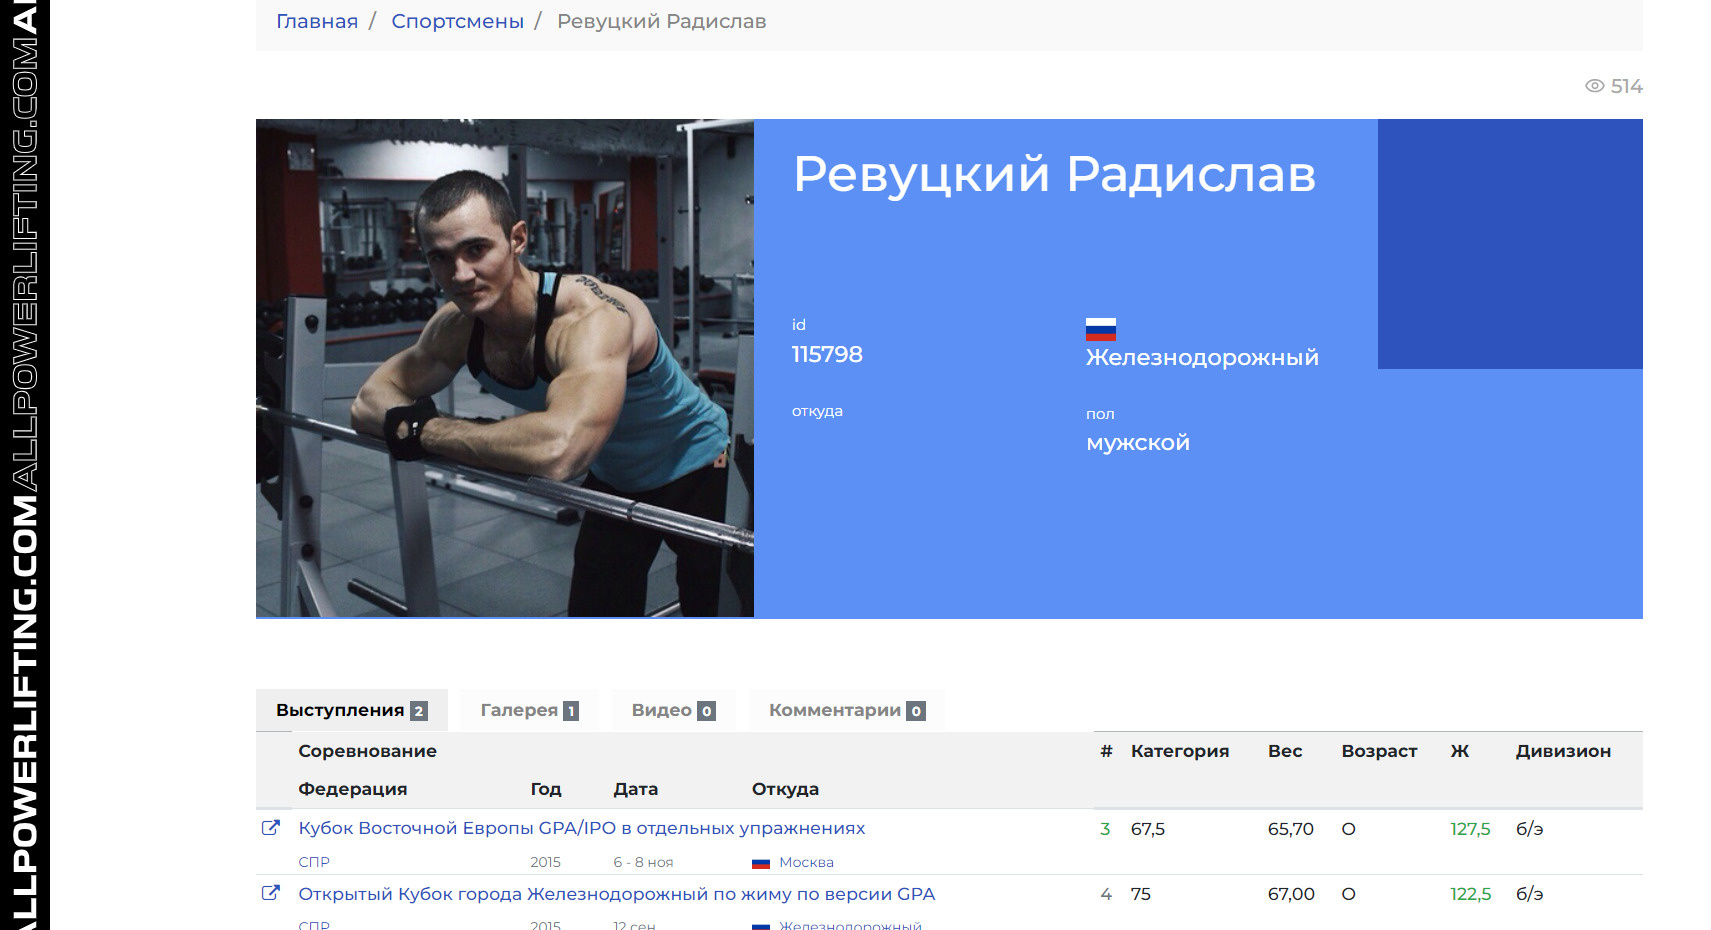 Карточка Радислава Ревуцкого в базе данных выступлений по пауэрлифтингу. Видно третье место в 2015 году